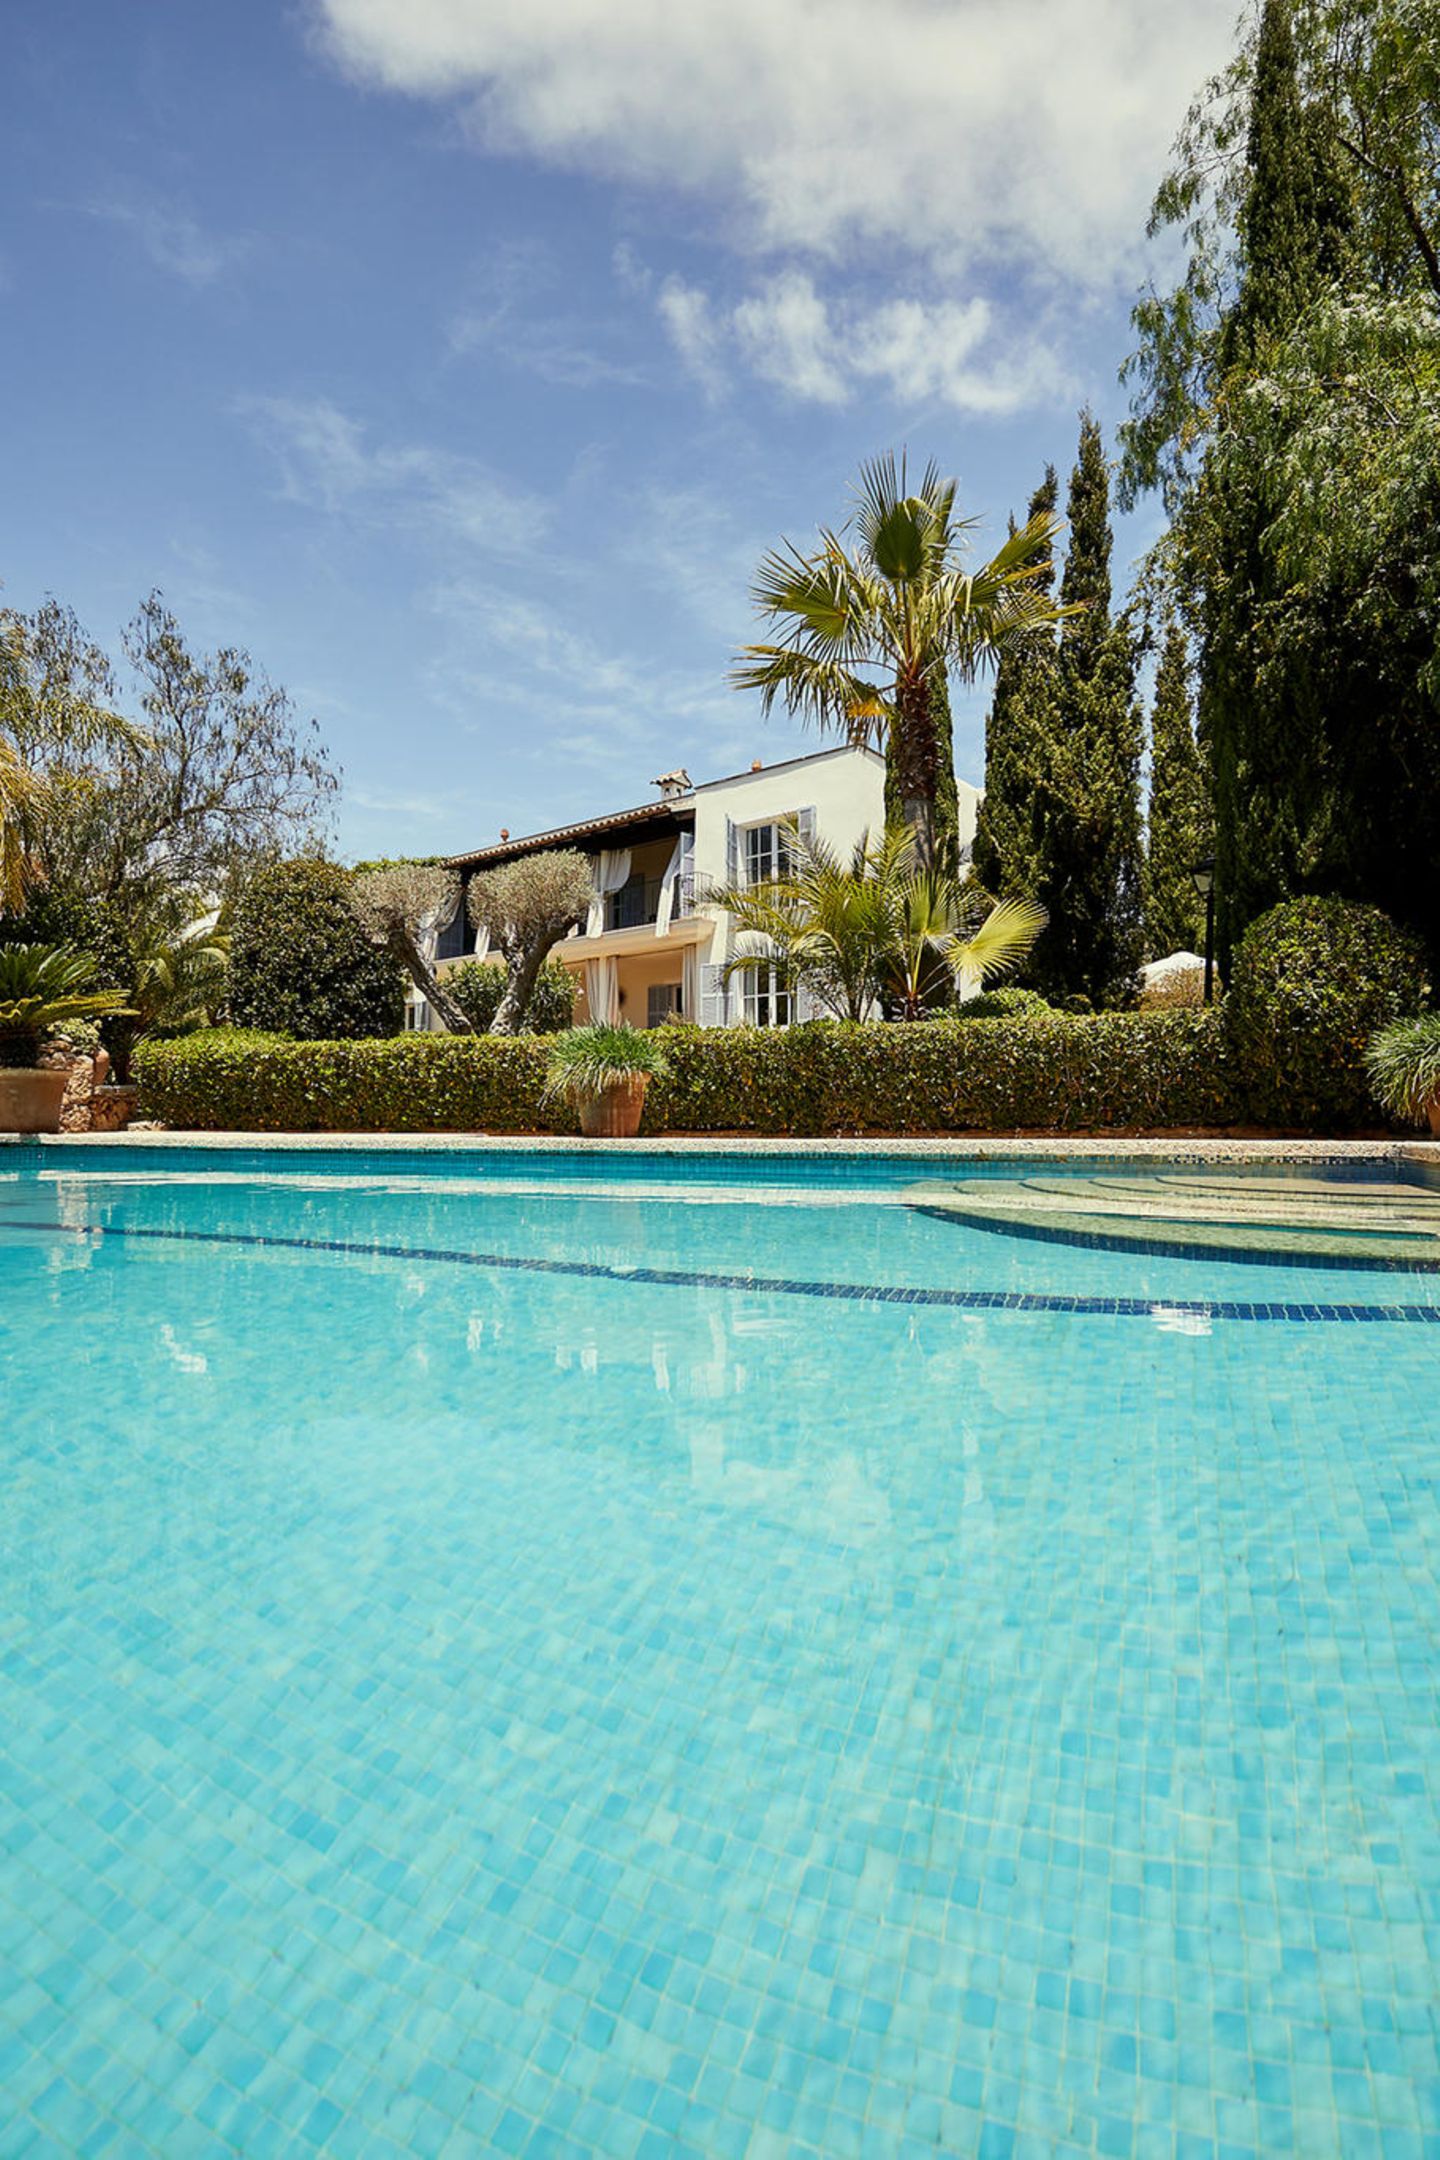 Vor 20 Jahren kaufte Guido Maria Kretschmer diese Finca, keine halbe Stunde von Palma de Mallorca entfernt. Er und sein Frank feierten hier viele Feste mit prominenten Gästen. Hollywood-Star Goldie Hawn liebte vor allem den Pool.